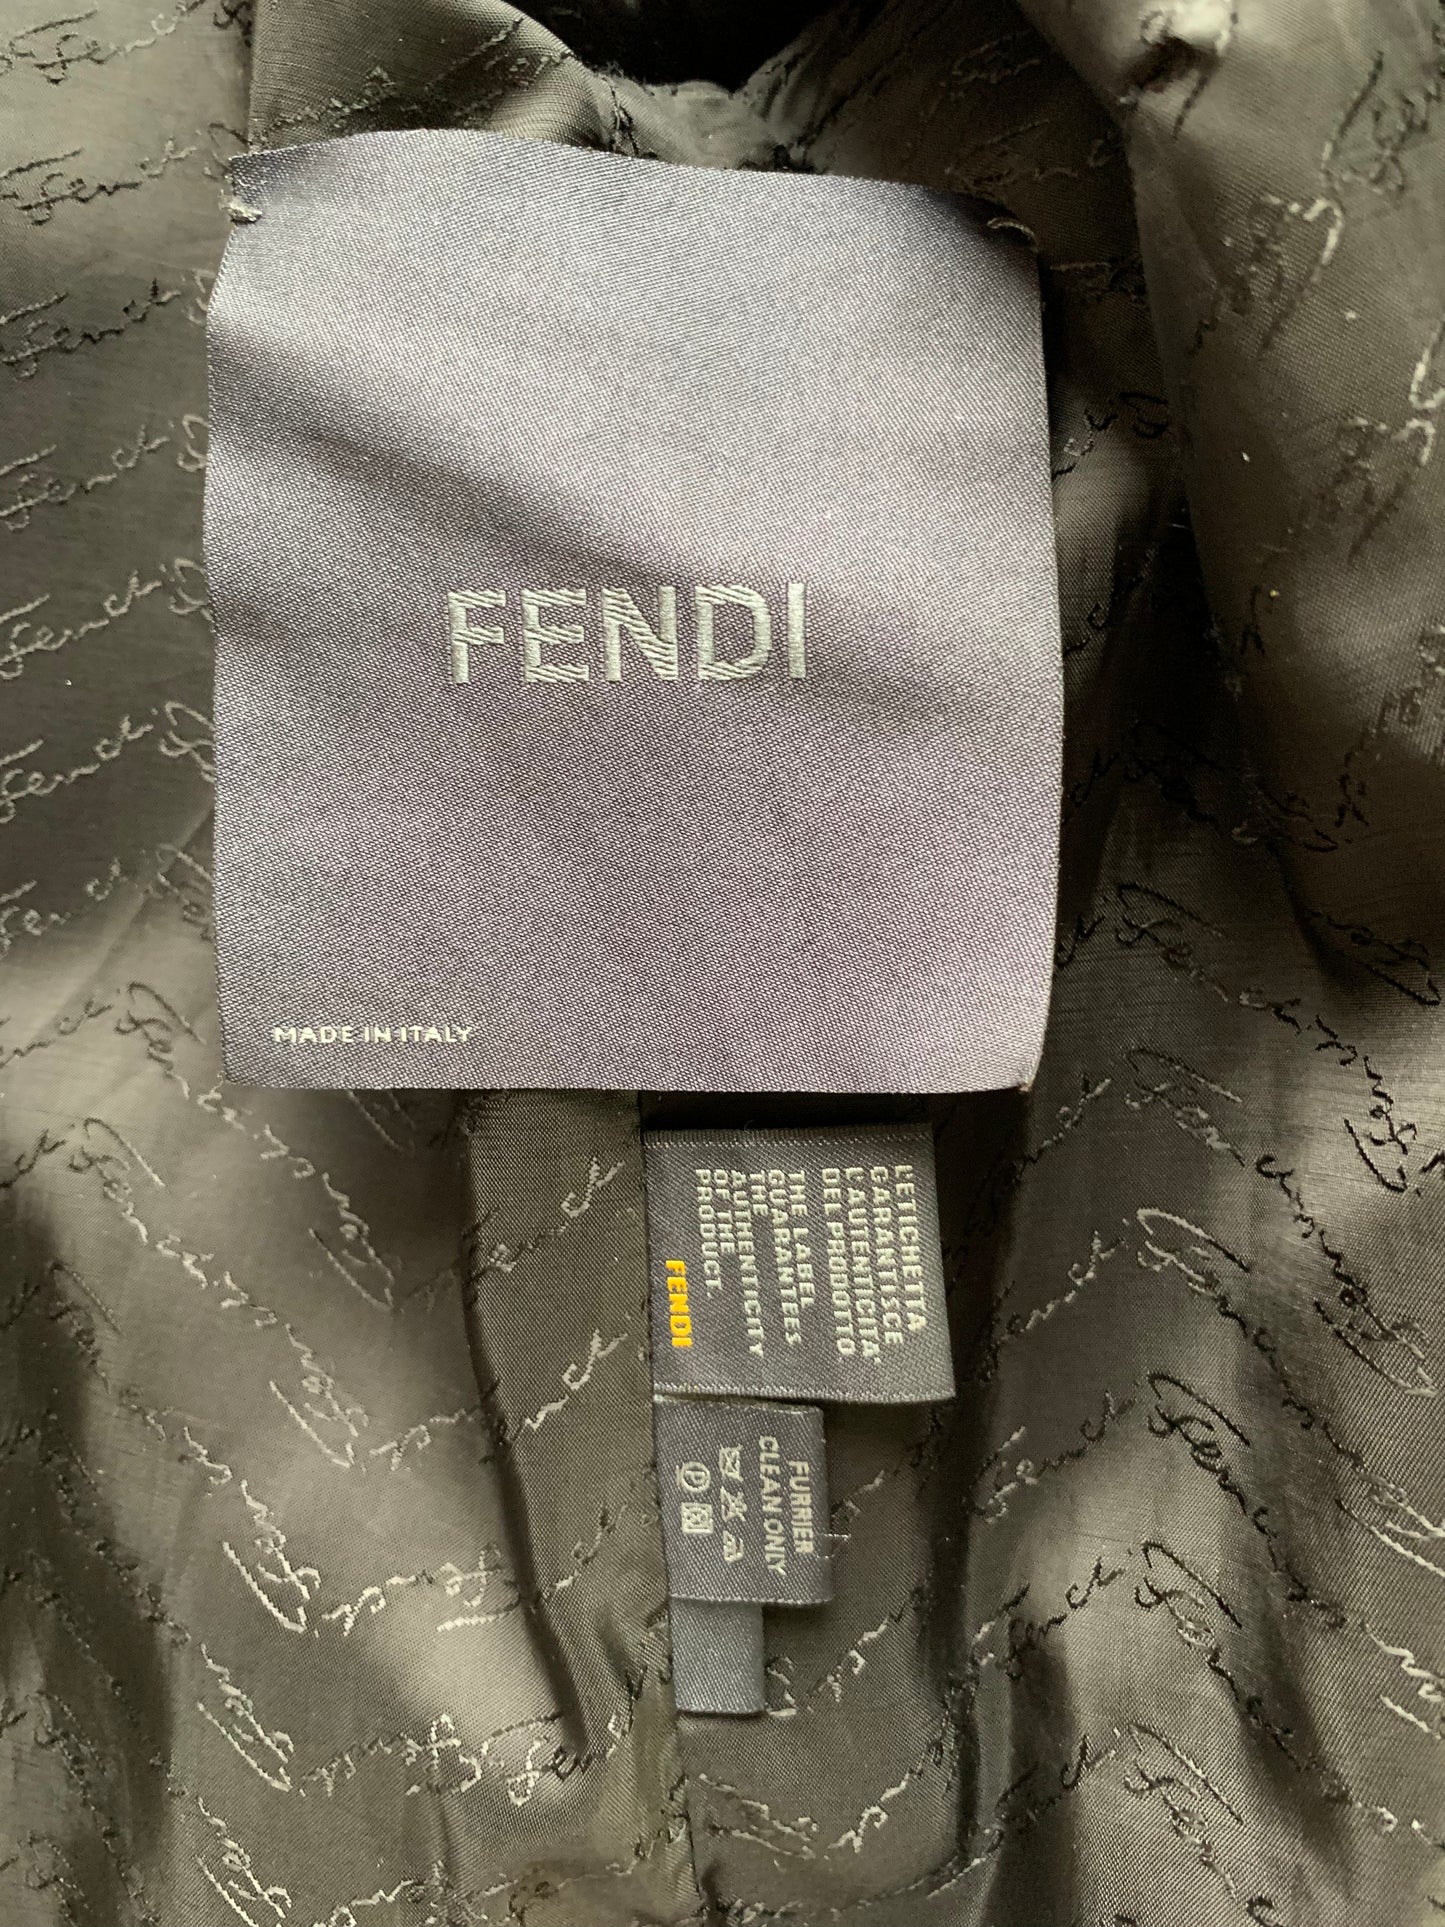 FENDI - Mink fur black size 38 IT